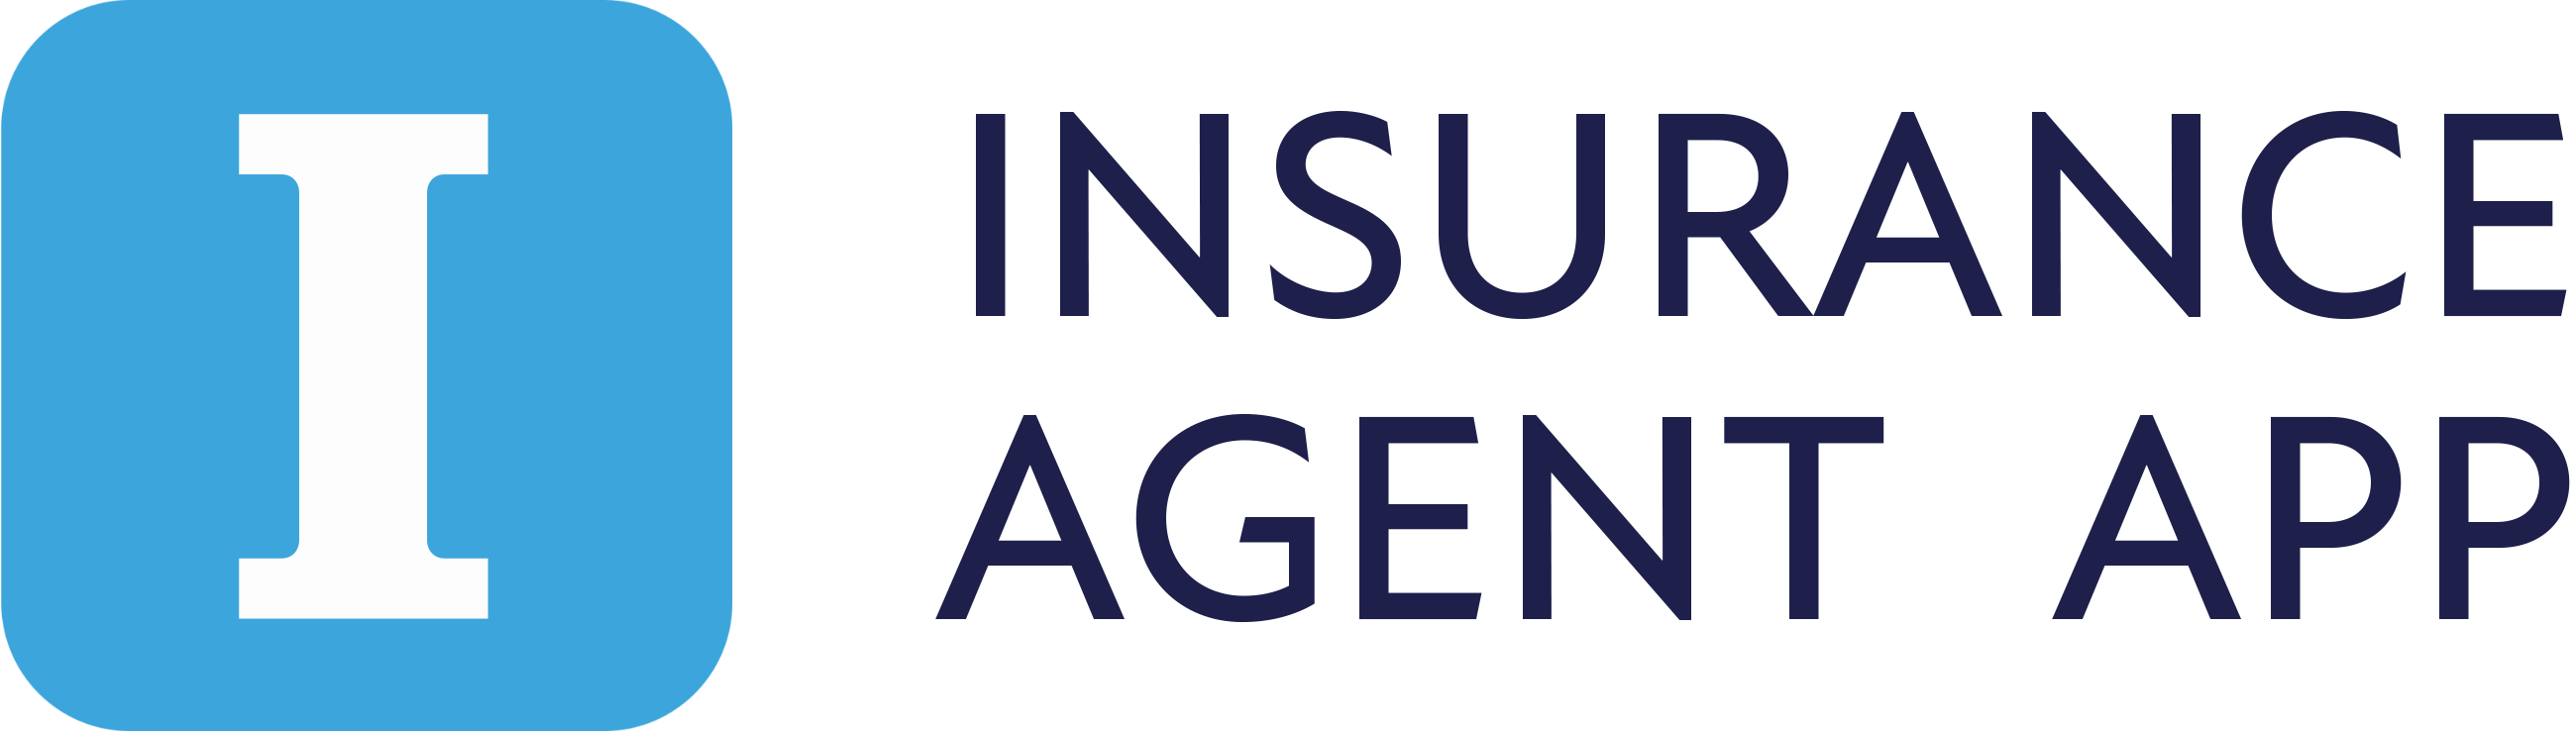 Insurance Agent Mobile App Logo